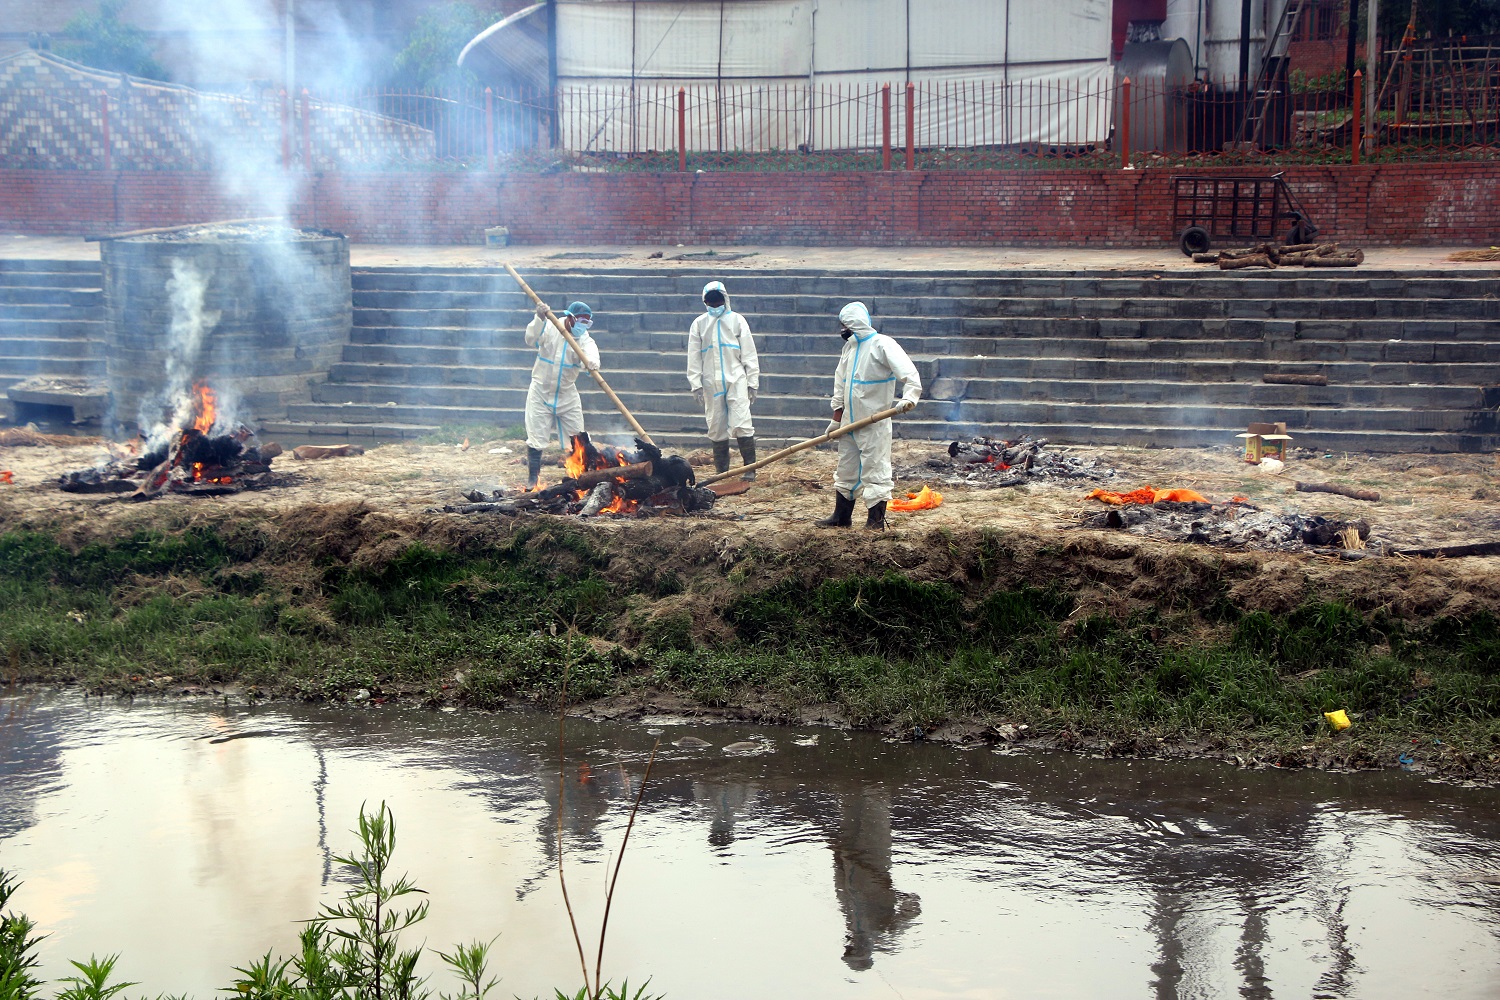 काठमाडौंमा संक्रमितको शव व्यवस्थापनमा समस्या, बगरमा जलाउन थालियो शव (भिडियो रिपोर्टसहित)